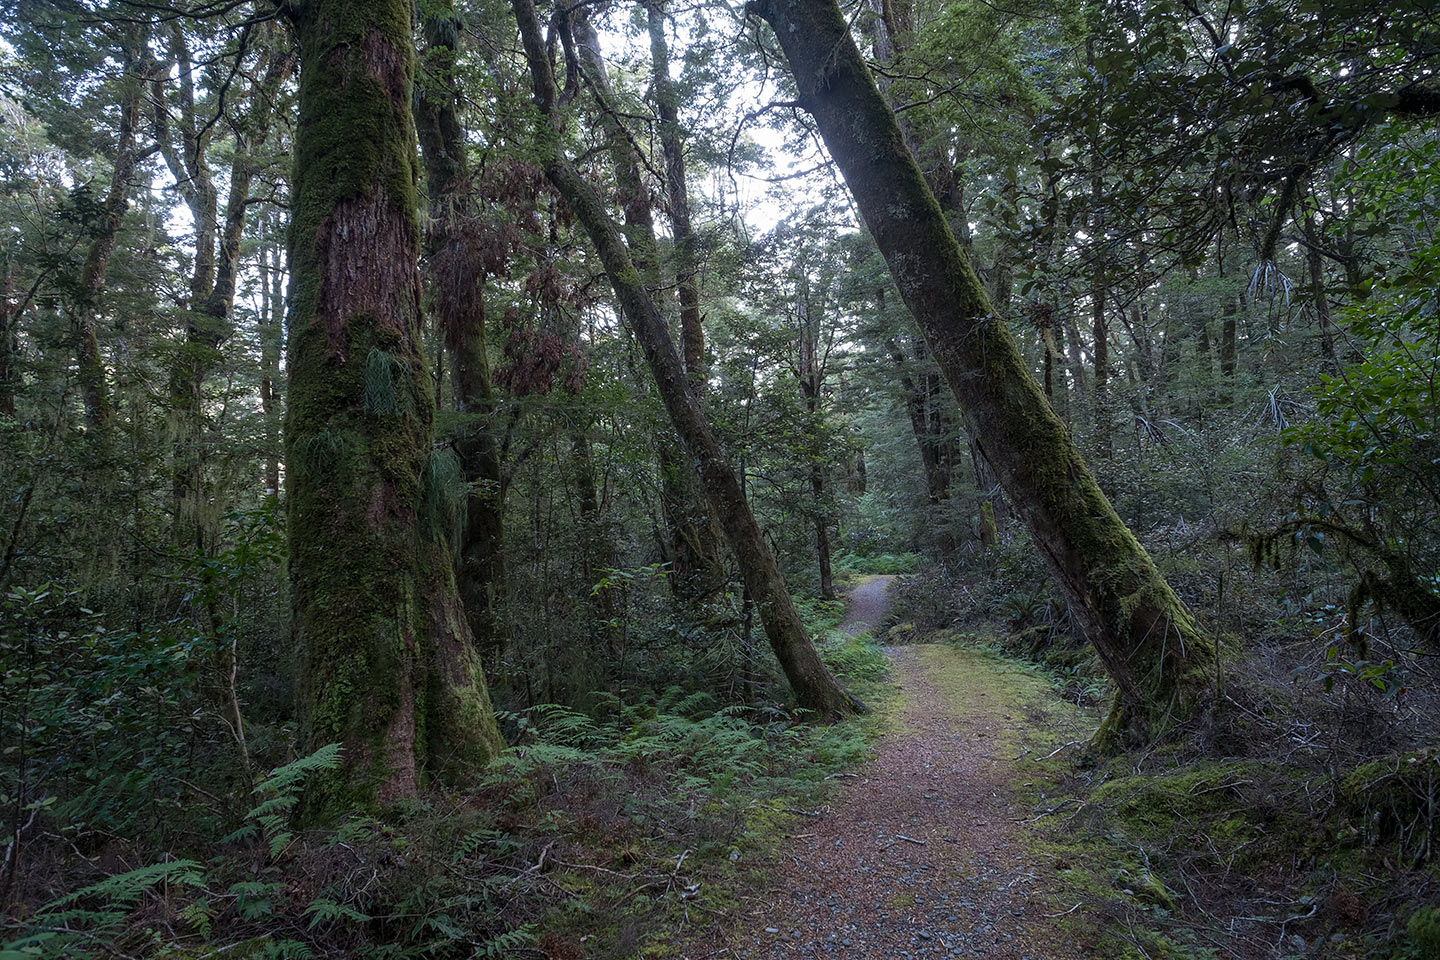 Cameron Flat Nature Walk, Mount Aspiring National Park, New Zealand